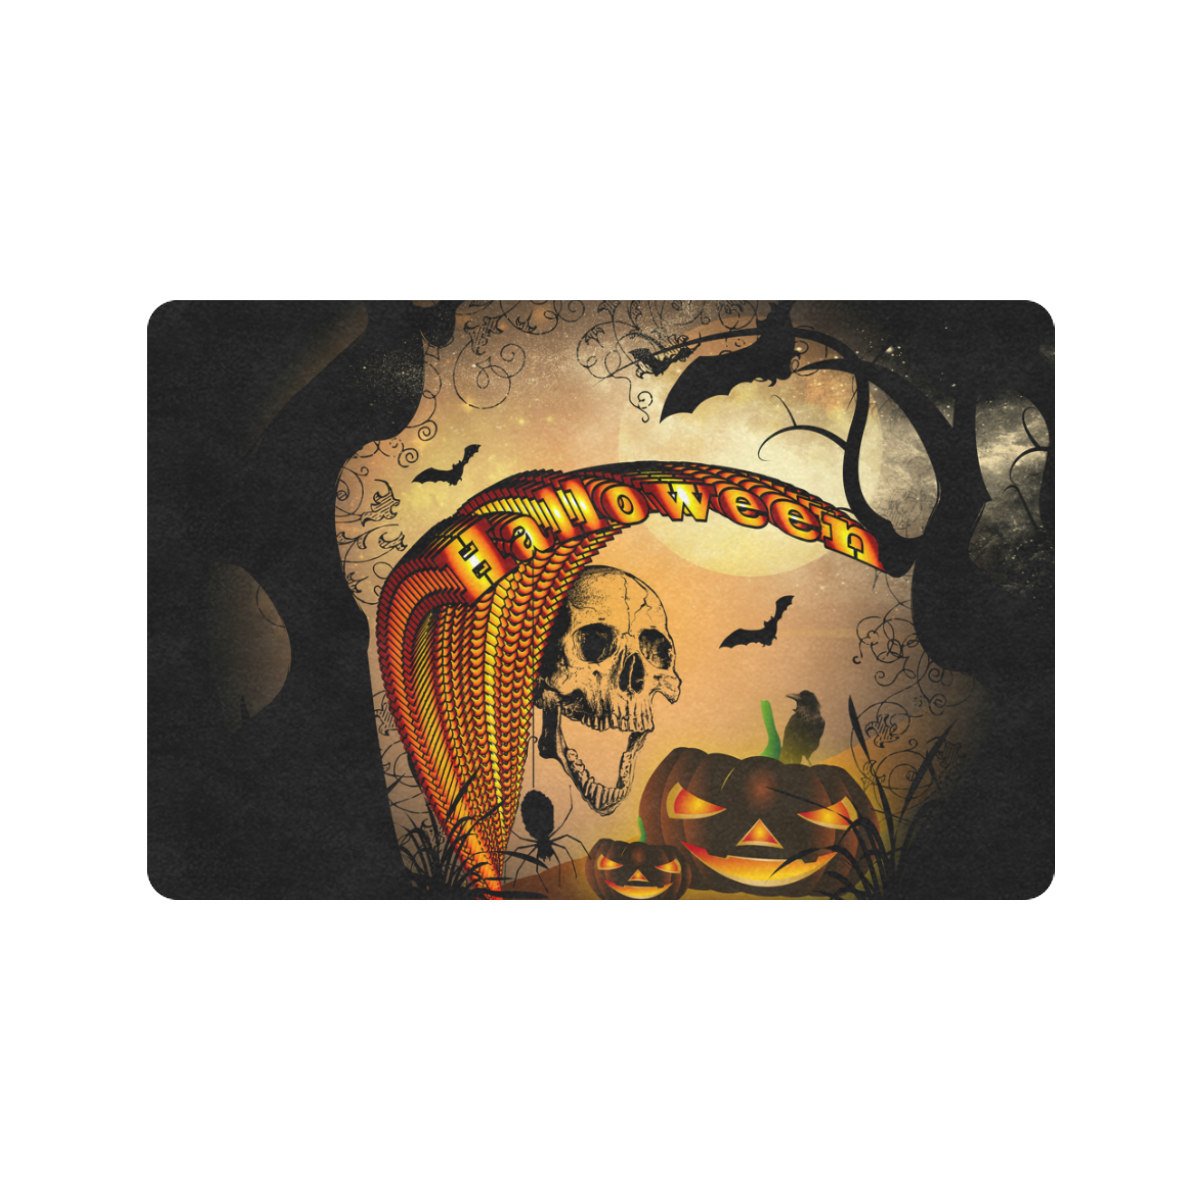 Funny halloween design with skull and pumpkin Doormat 24"x16" (Black Base)